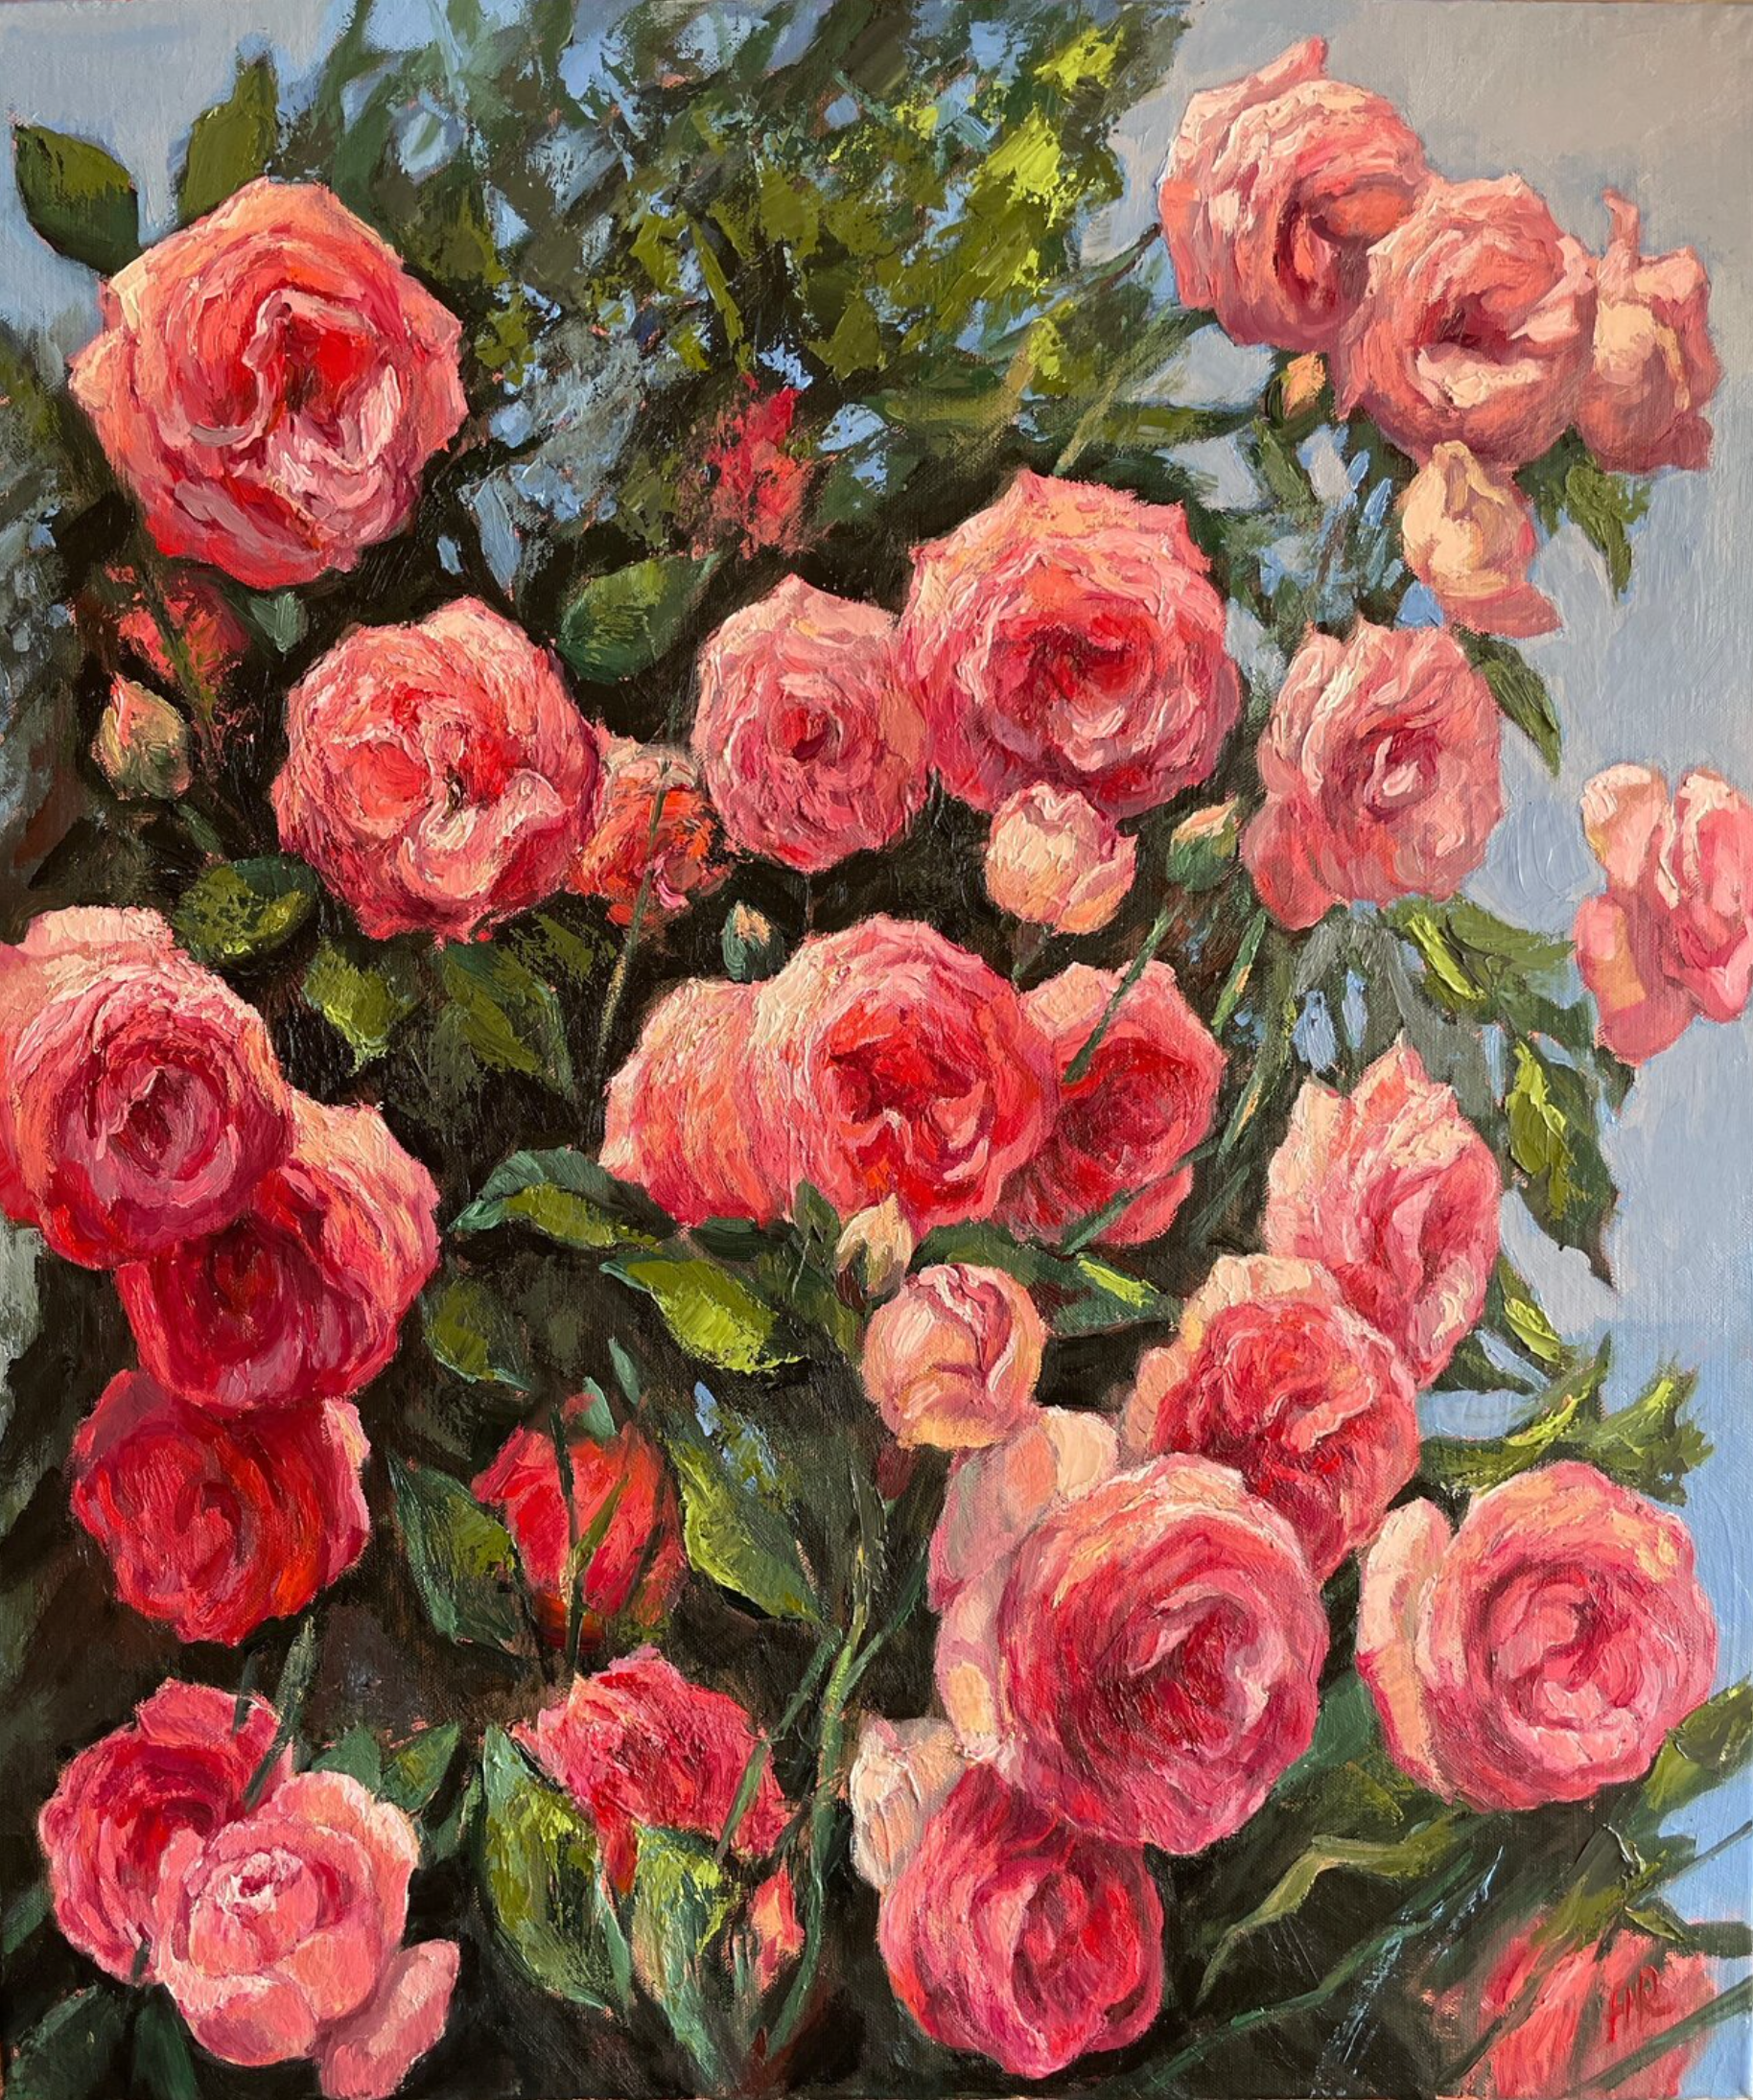 Il dipinto "Summer Glimpse" di Anna Reznikova mostra, con tratti voluminosi in tecnica a impressione e dipinti con pennelli sulla tela, splendidi fiori di cespuglio di rose. I fiori sono rosa, rosa e rossi, con foglie verde chiaro.